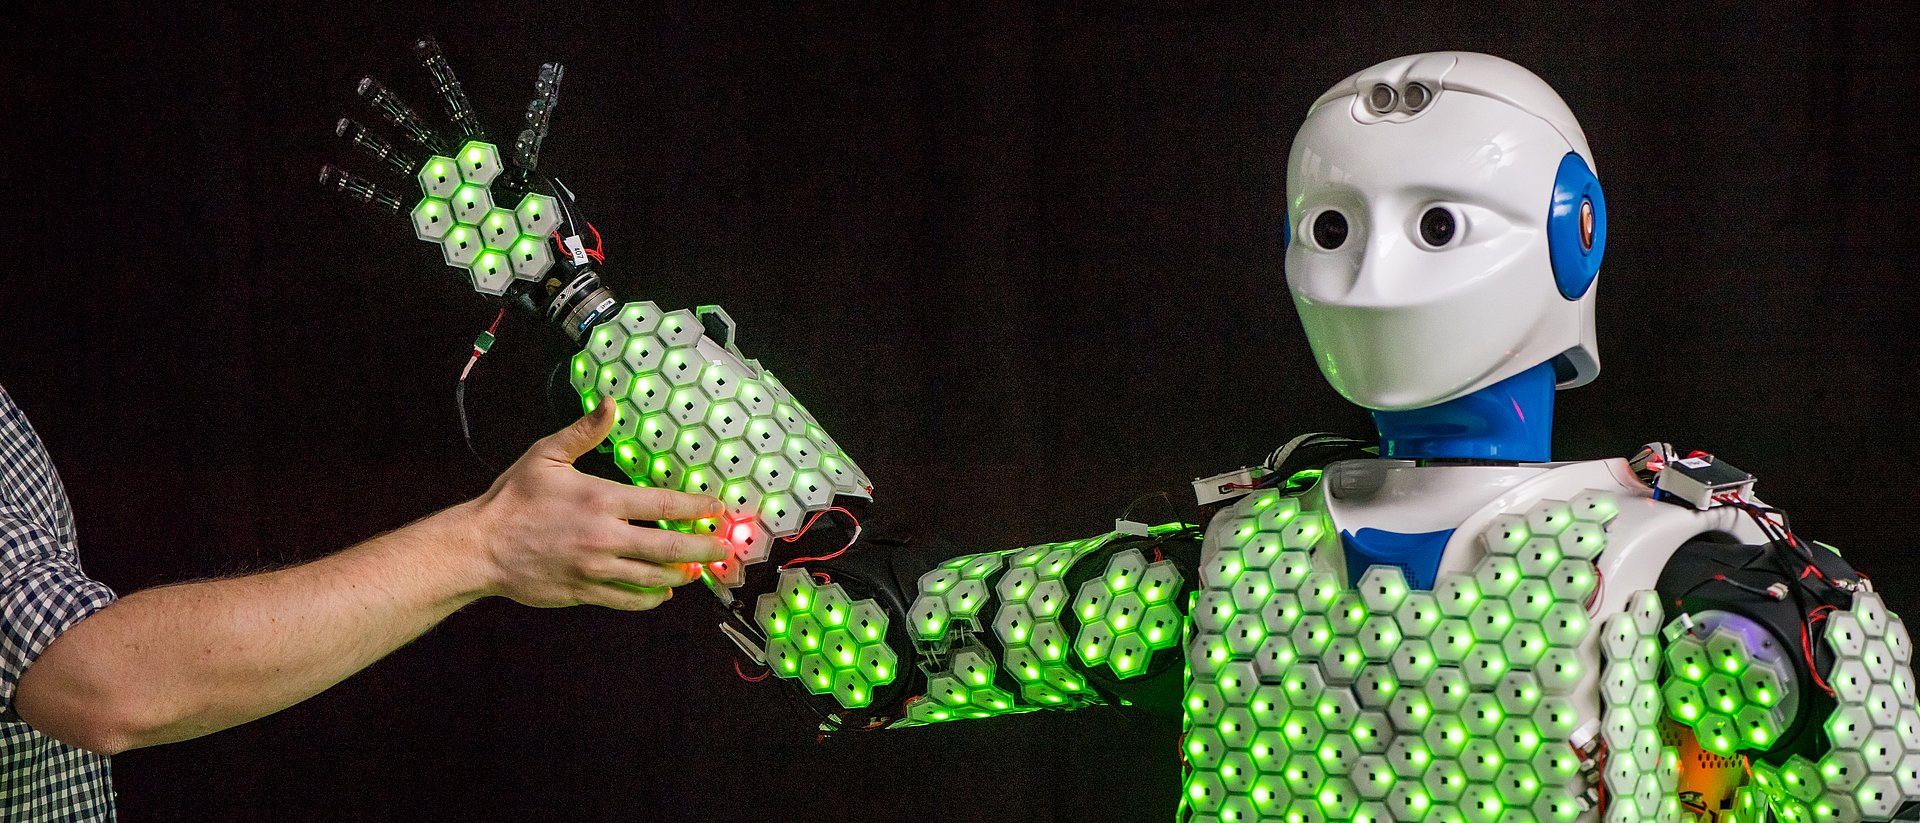 Roboter H-1 trägt künstliche Haut an Oberkörper und Armen.